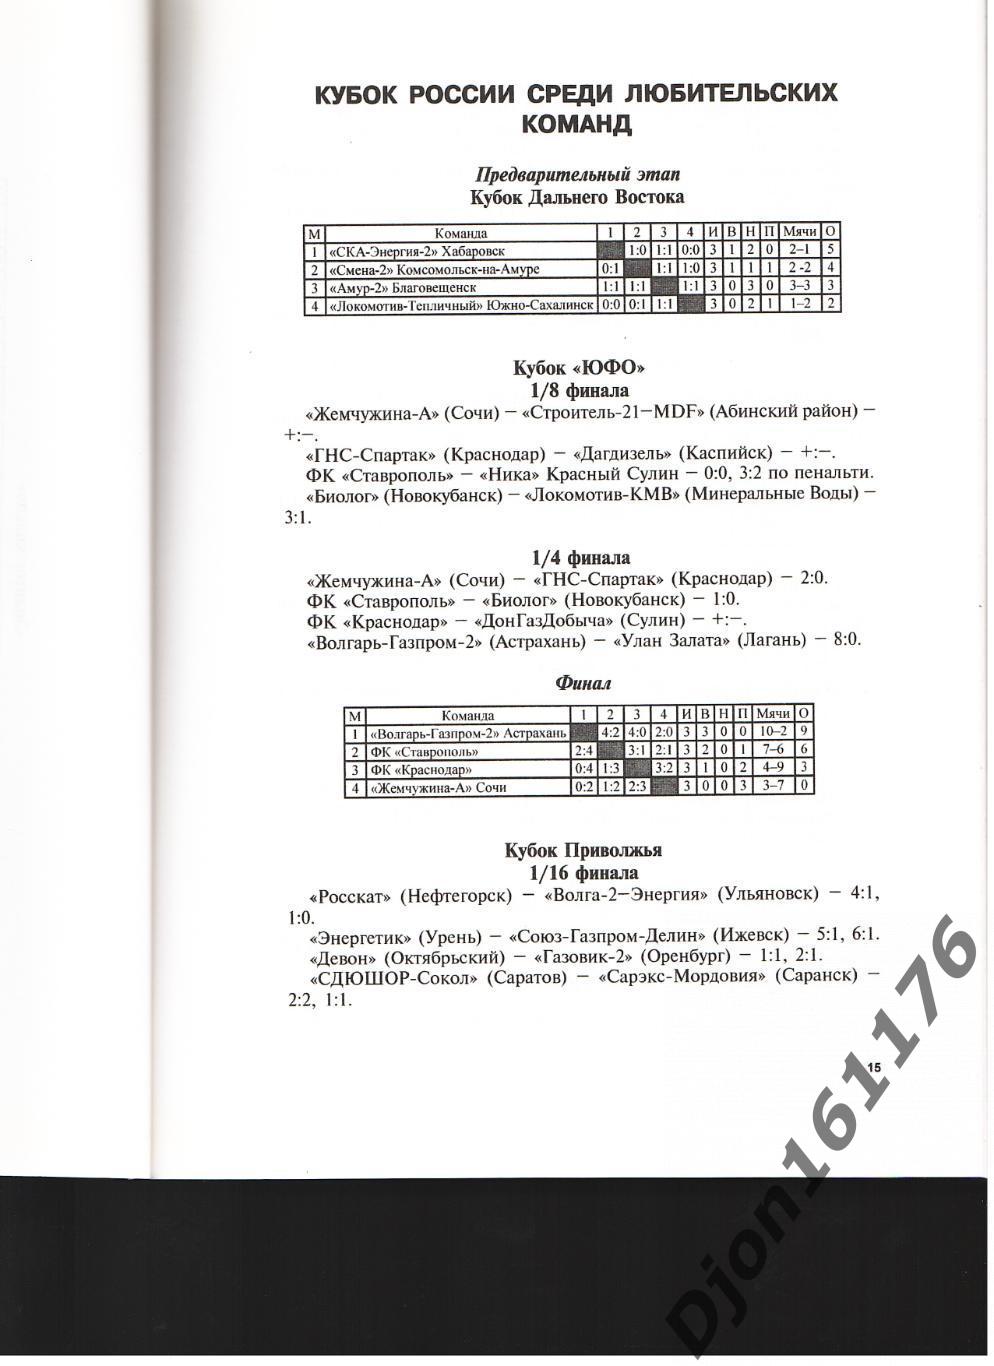 А.Константиновский, Б.Храмов «Любительский футбол России 2007 года». 3